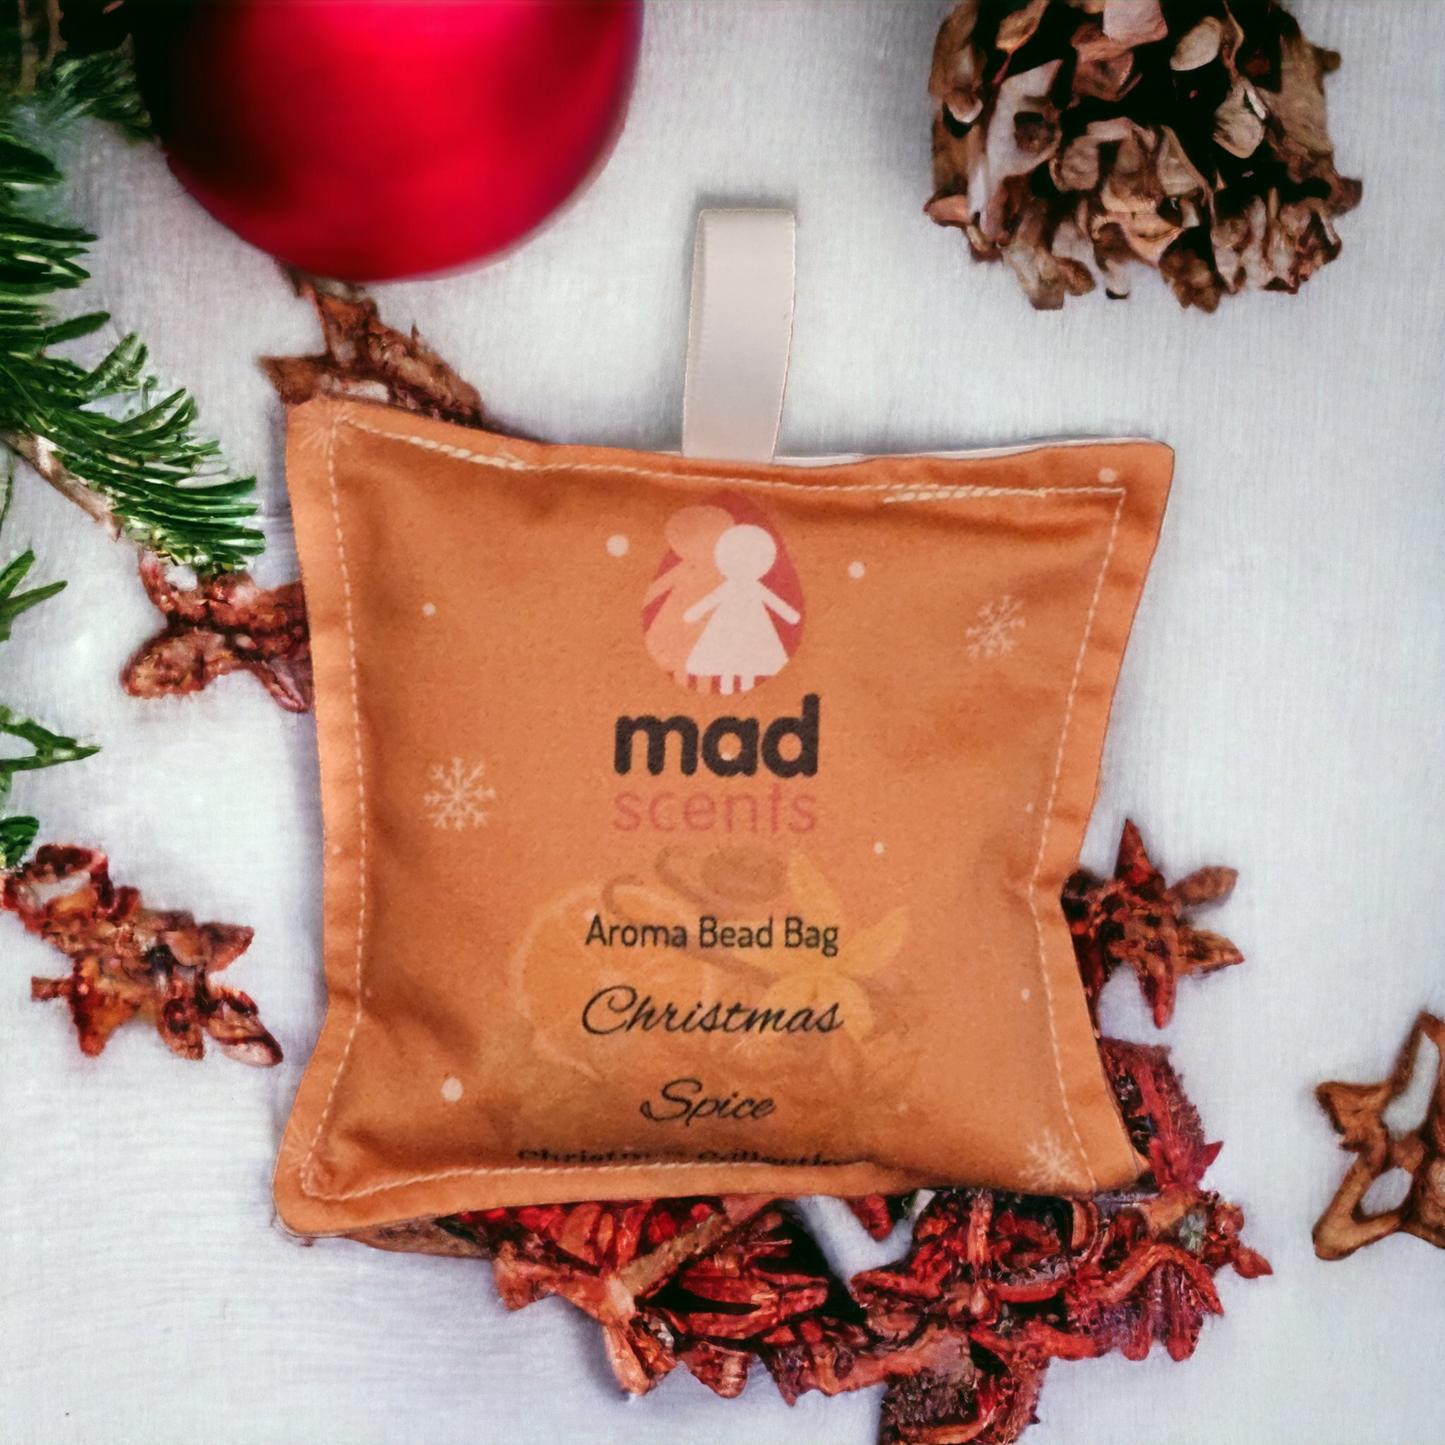 Christmas Spice - Aroma Bead Bag